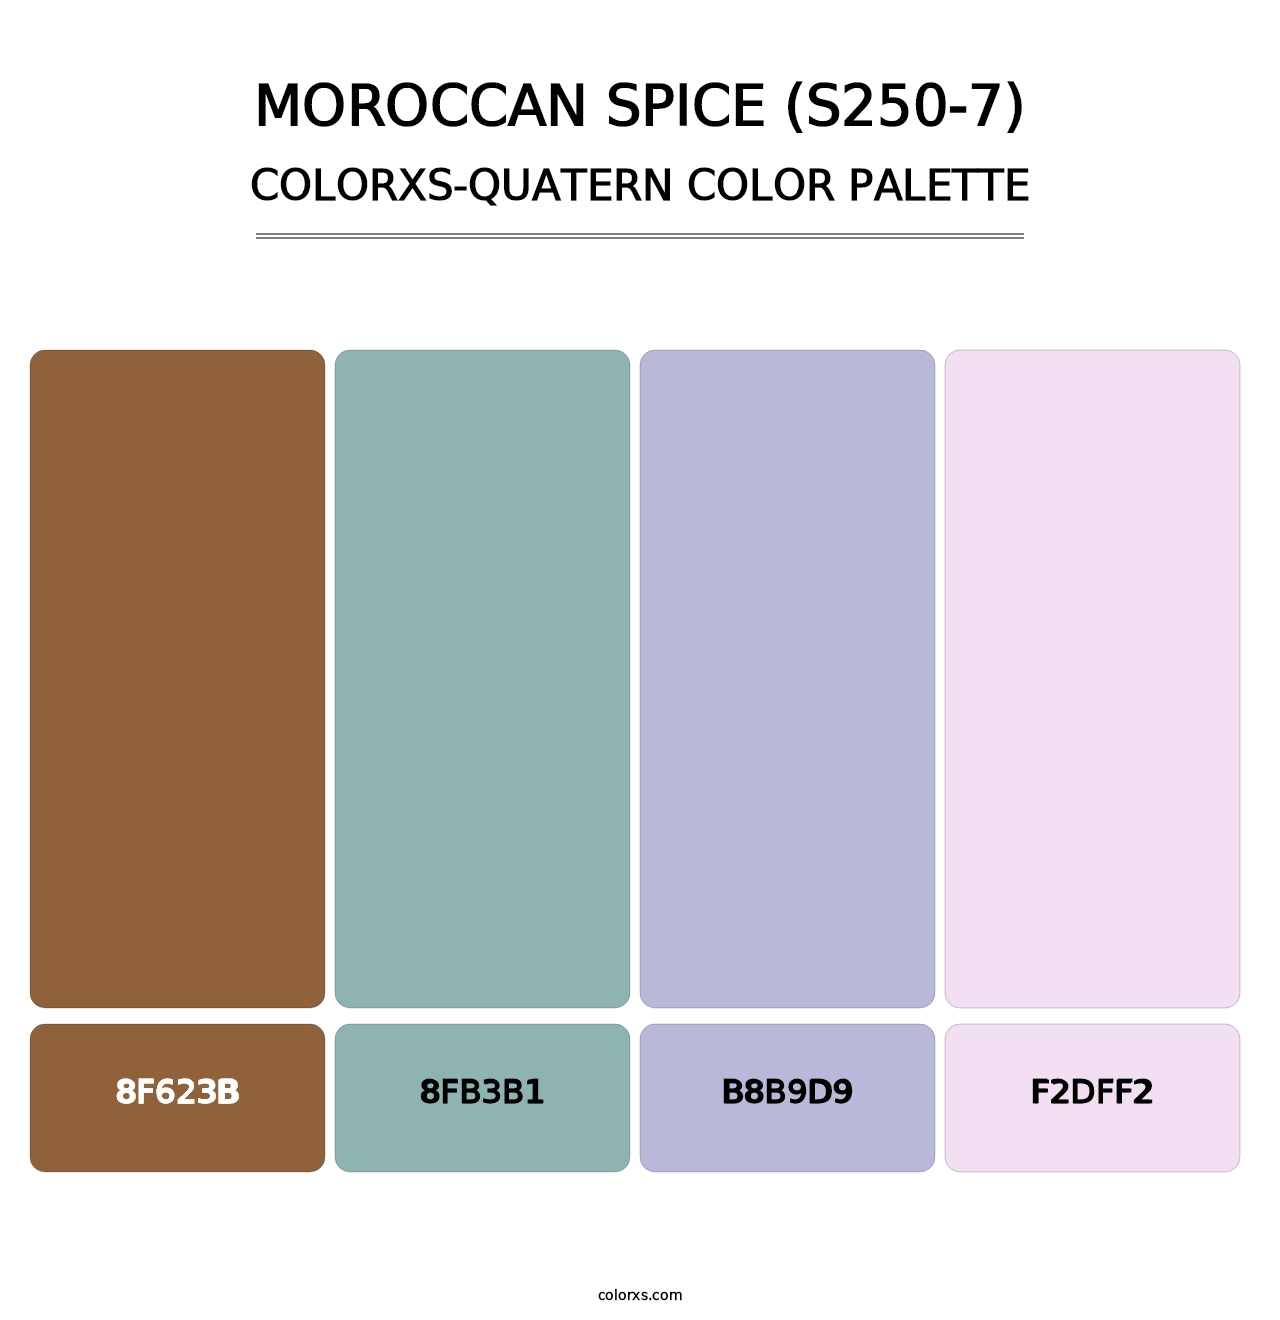 Moroccan Spice (S250-7) - Colorxs Quatern Palette